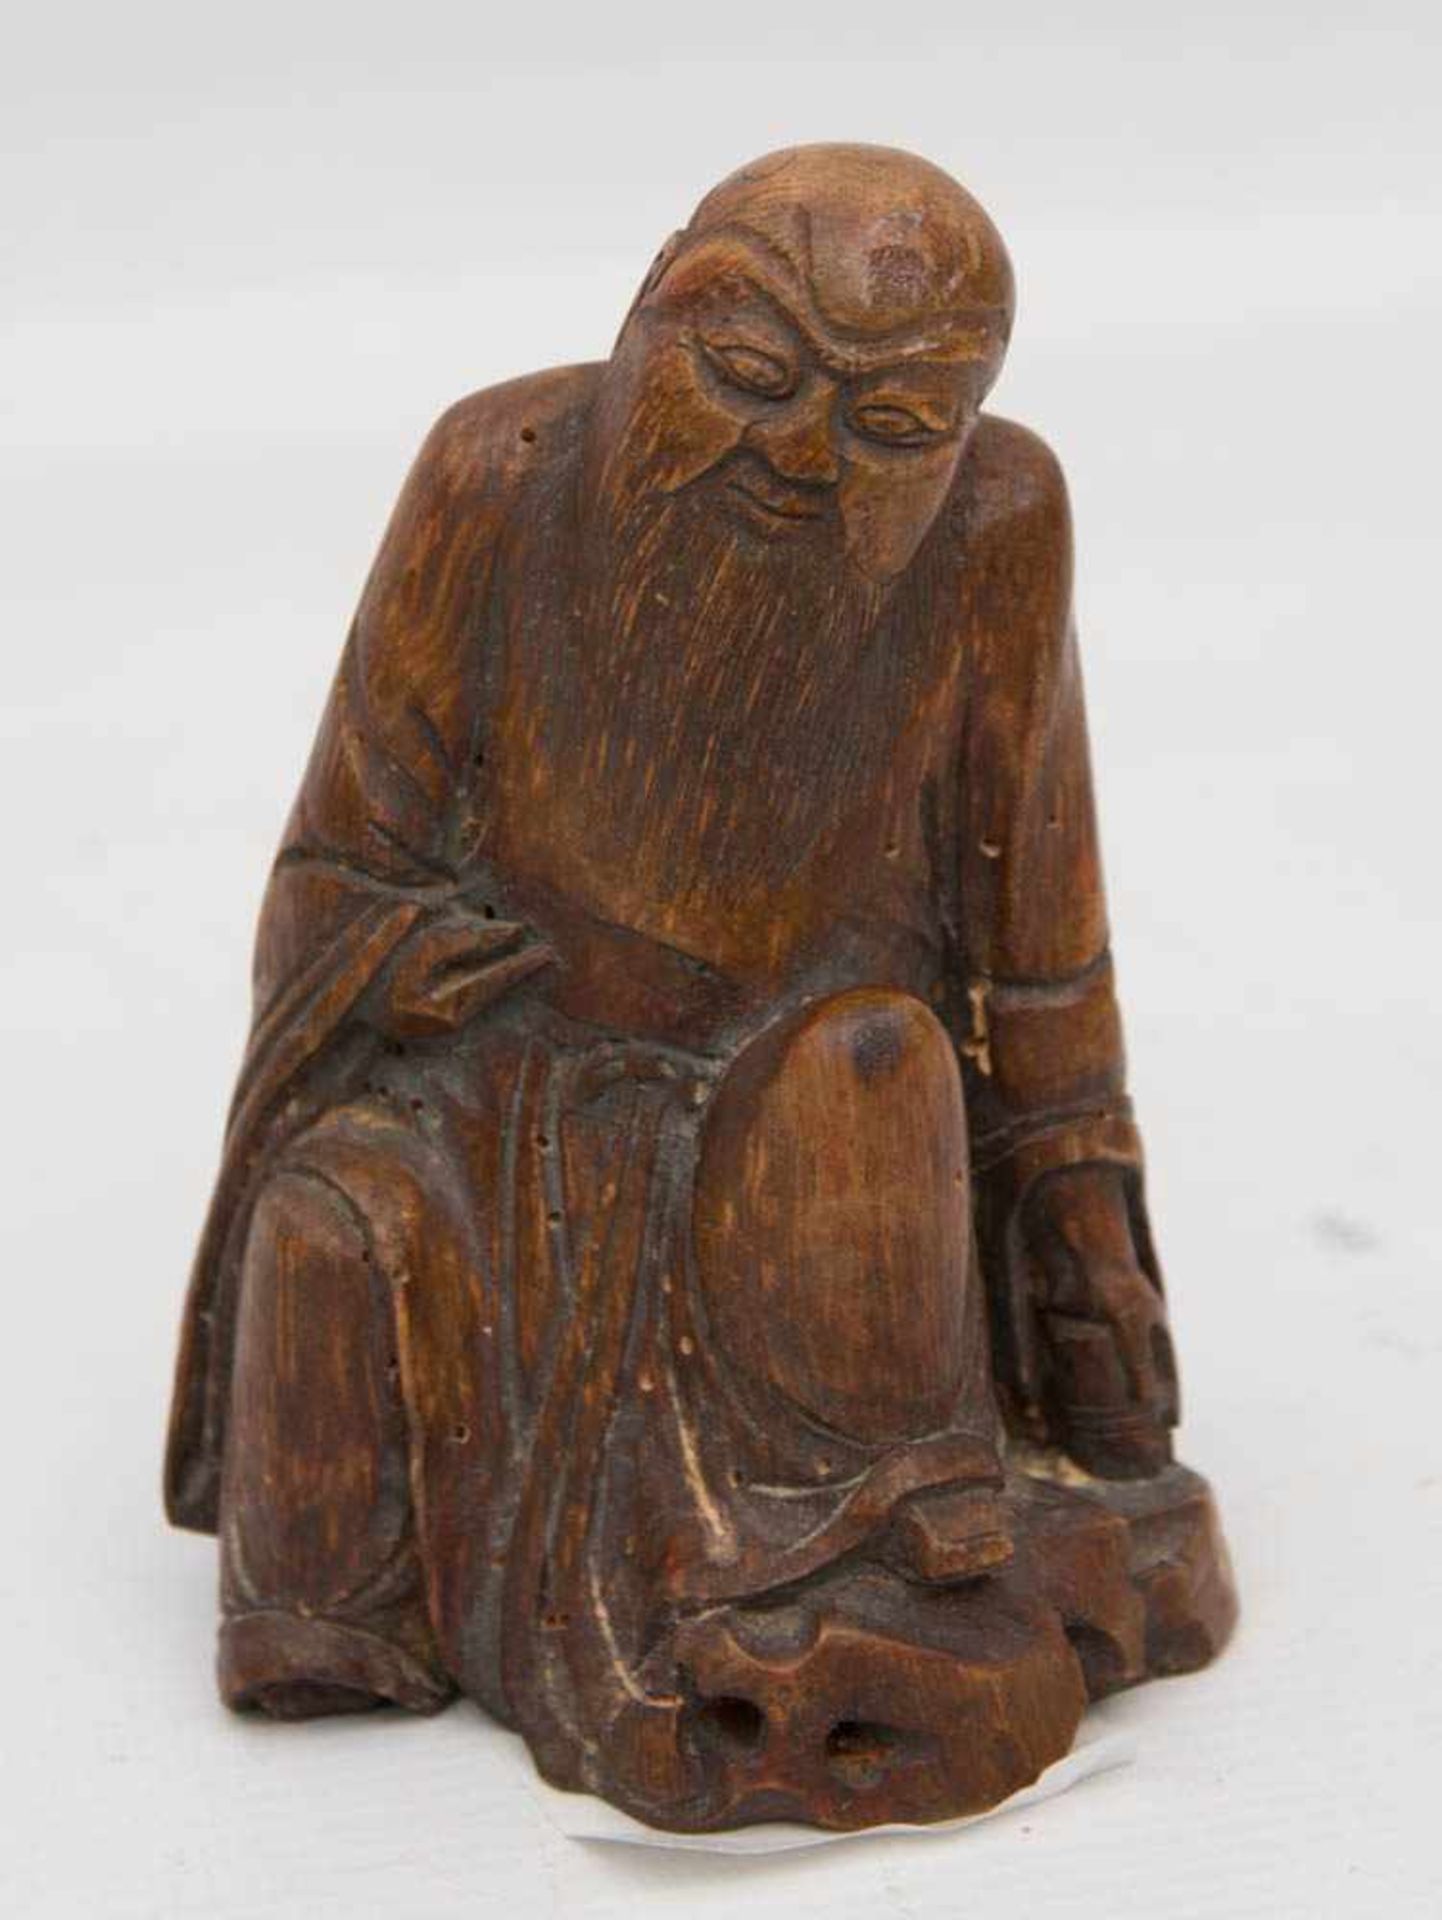 SITZENDER WEISER, Rosenholz, China 19. JahrhundertKleine Holzfigur eines sitzenden Weisen aus